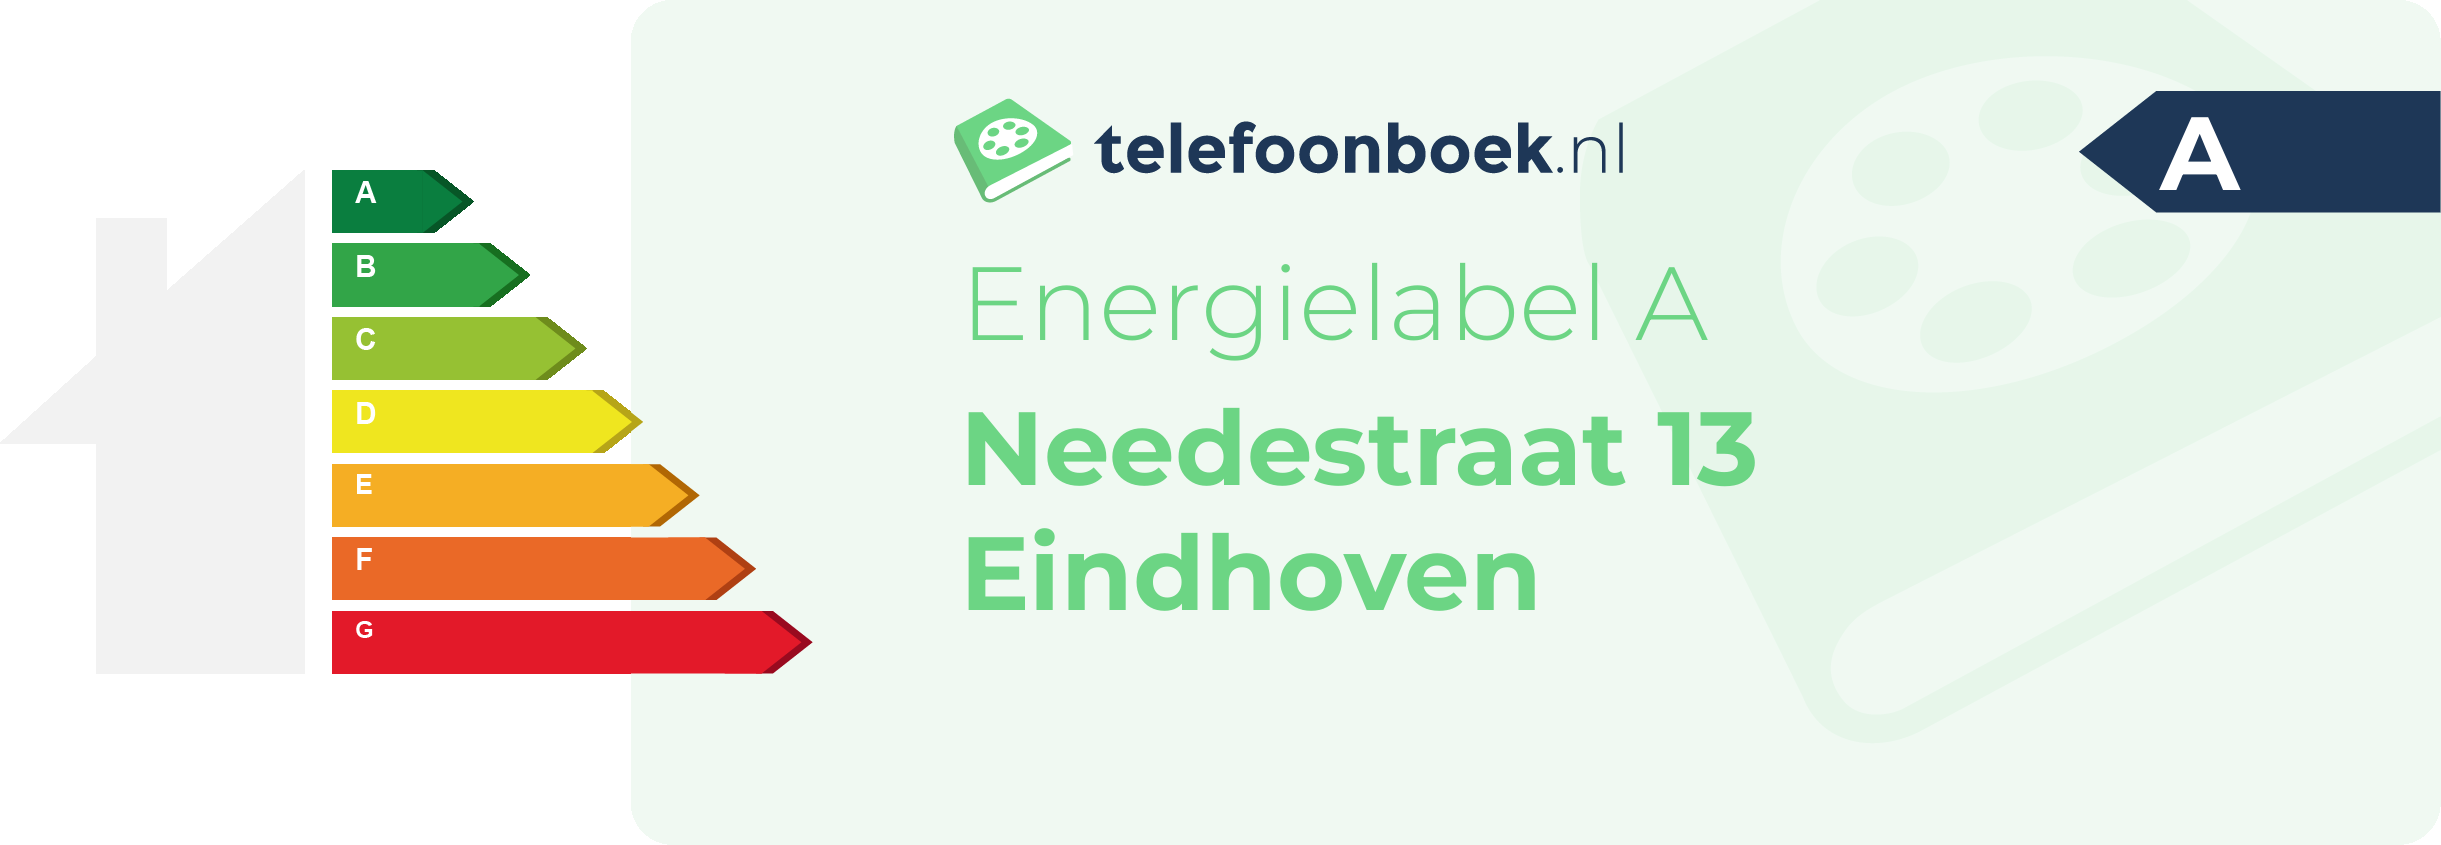 Energielabel Needestraat 13 Eindhoven